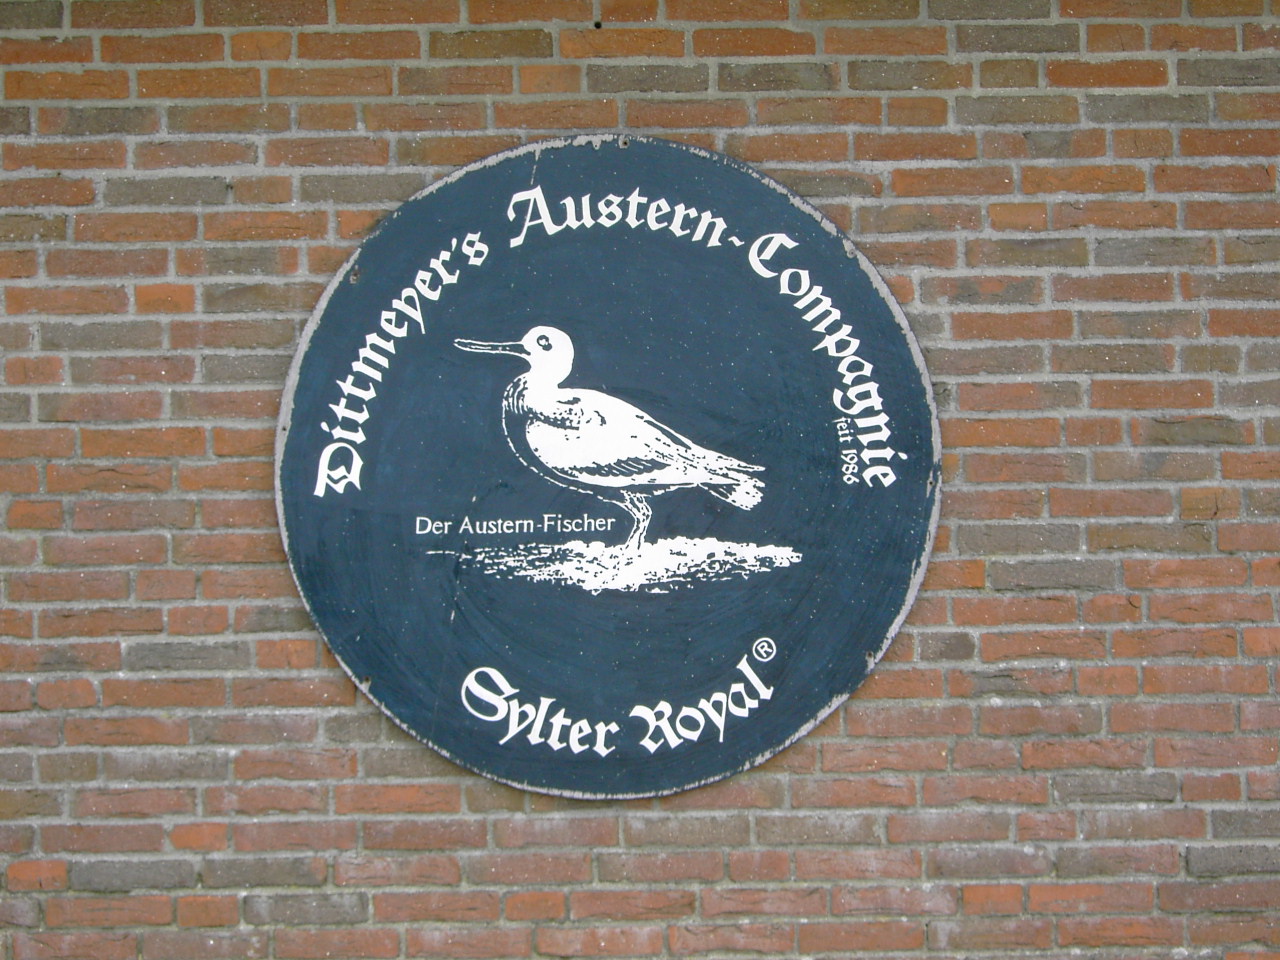 Dittmeyer's Austern Compagnie in List auf Sylt